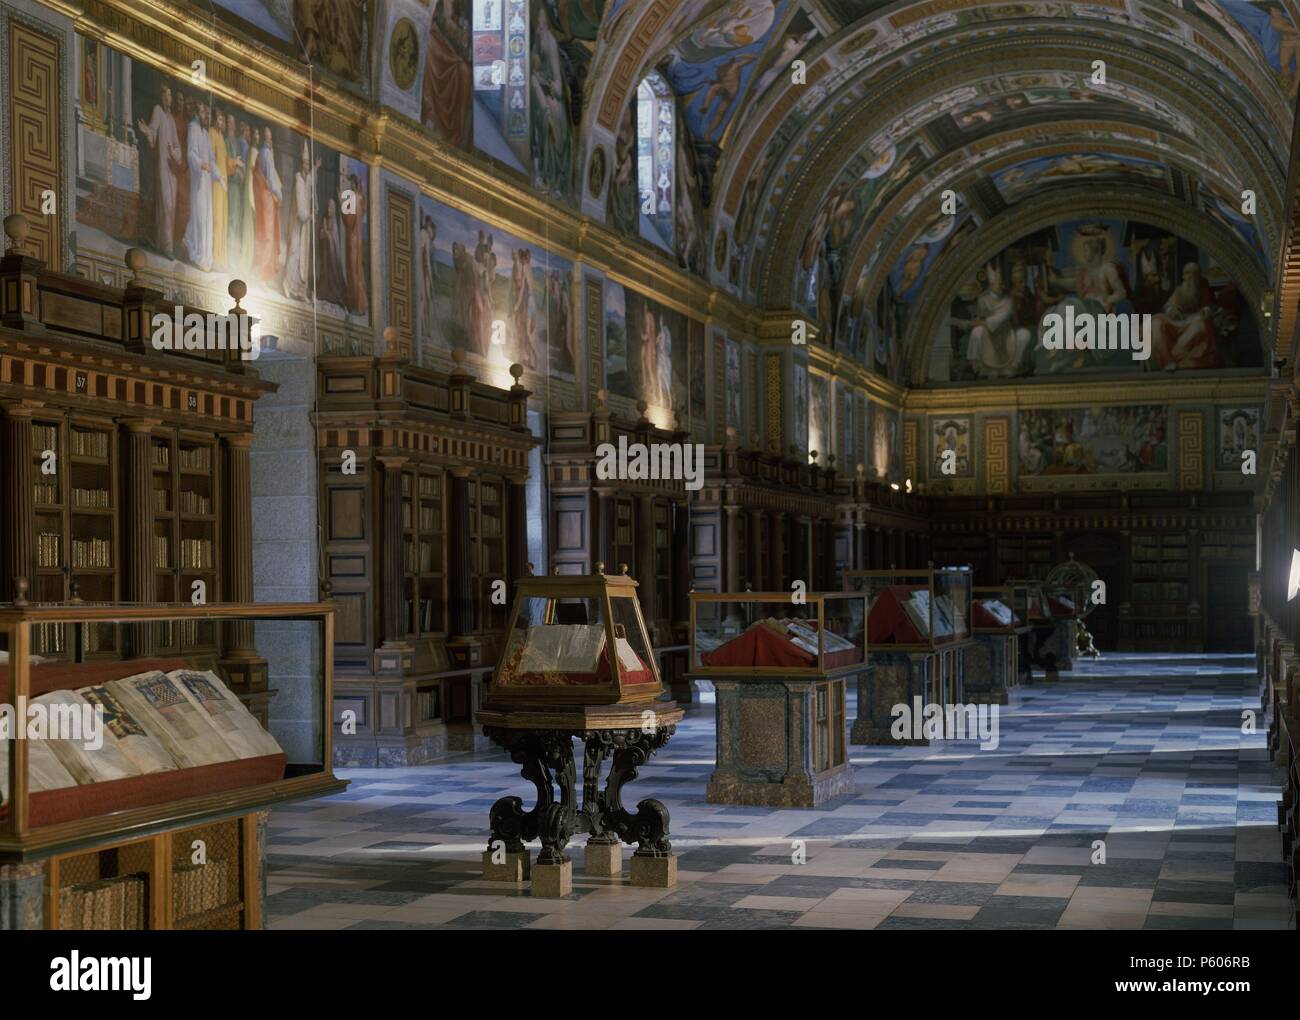 VISTA DE LA BIBLIOTECA. Ubicación: Edificio de la biblioteca del monasterio de San Lorenzo del Escorial, Madrid, España. Foto de stock